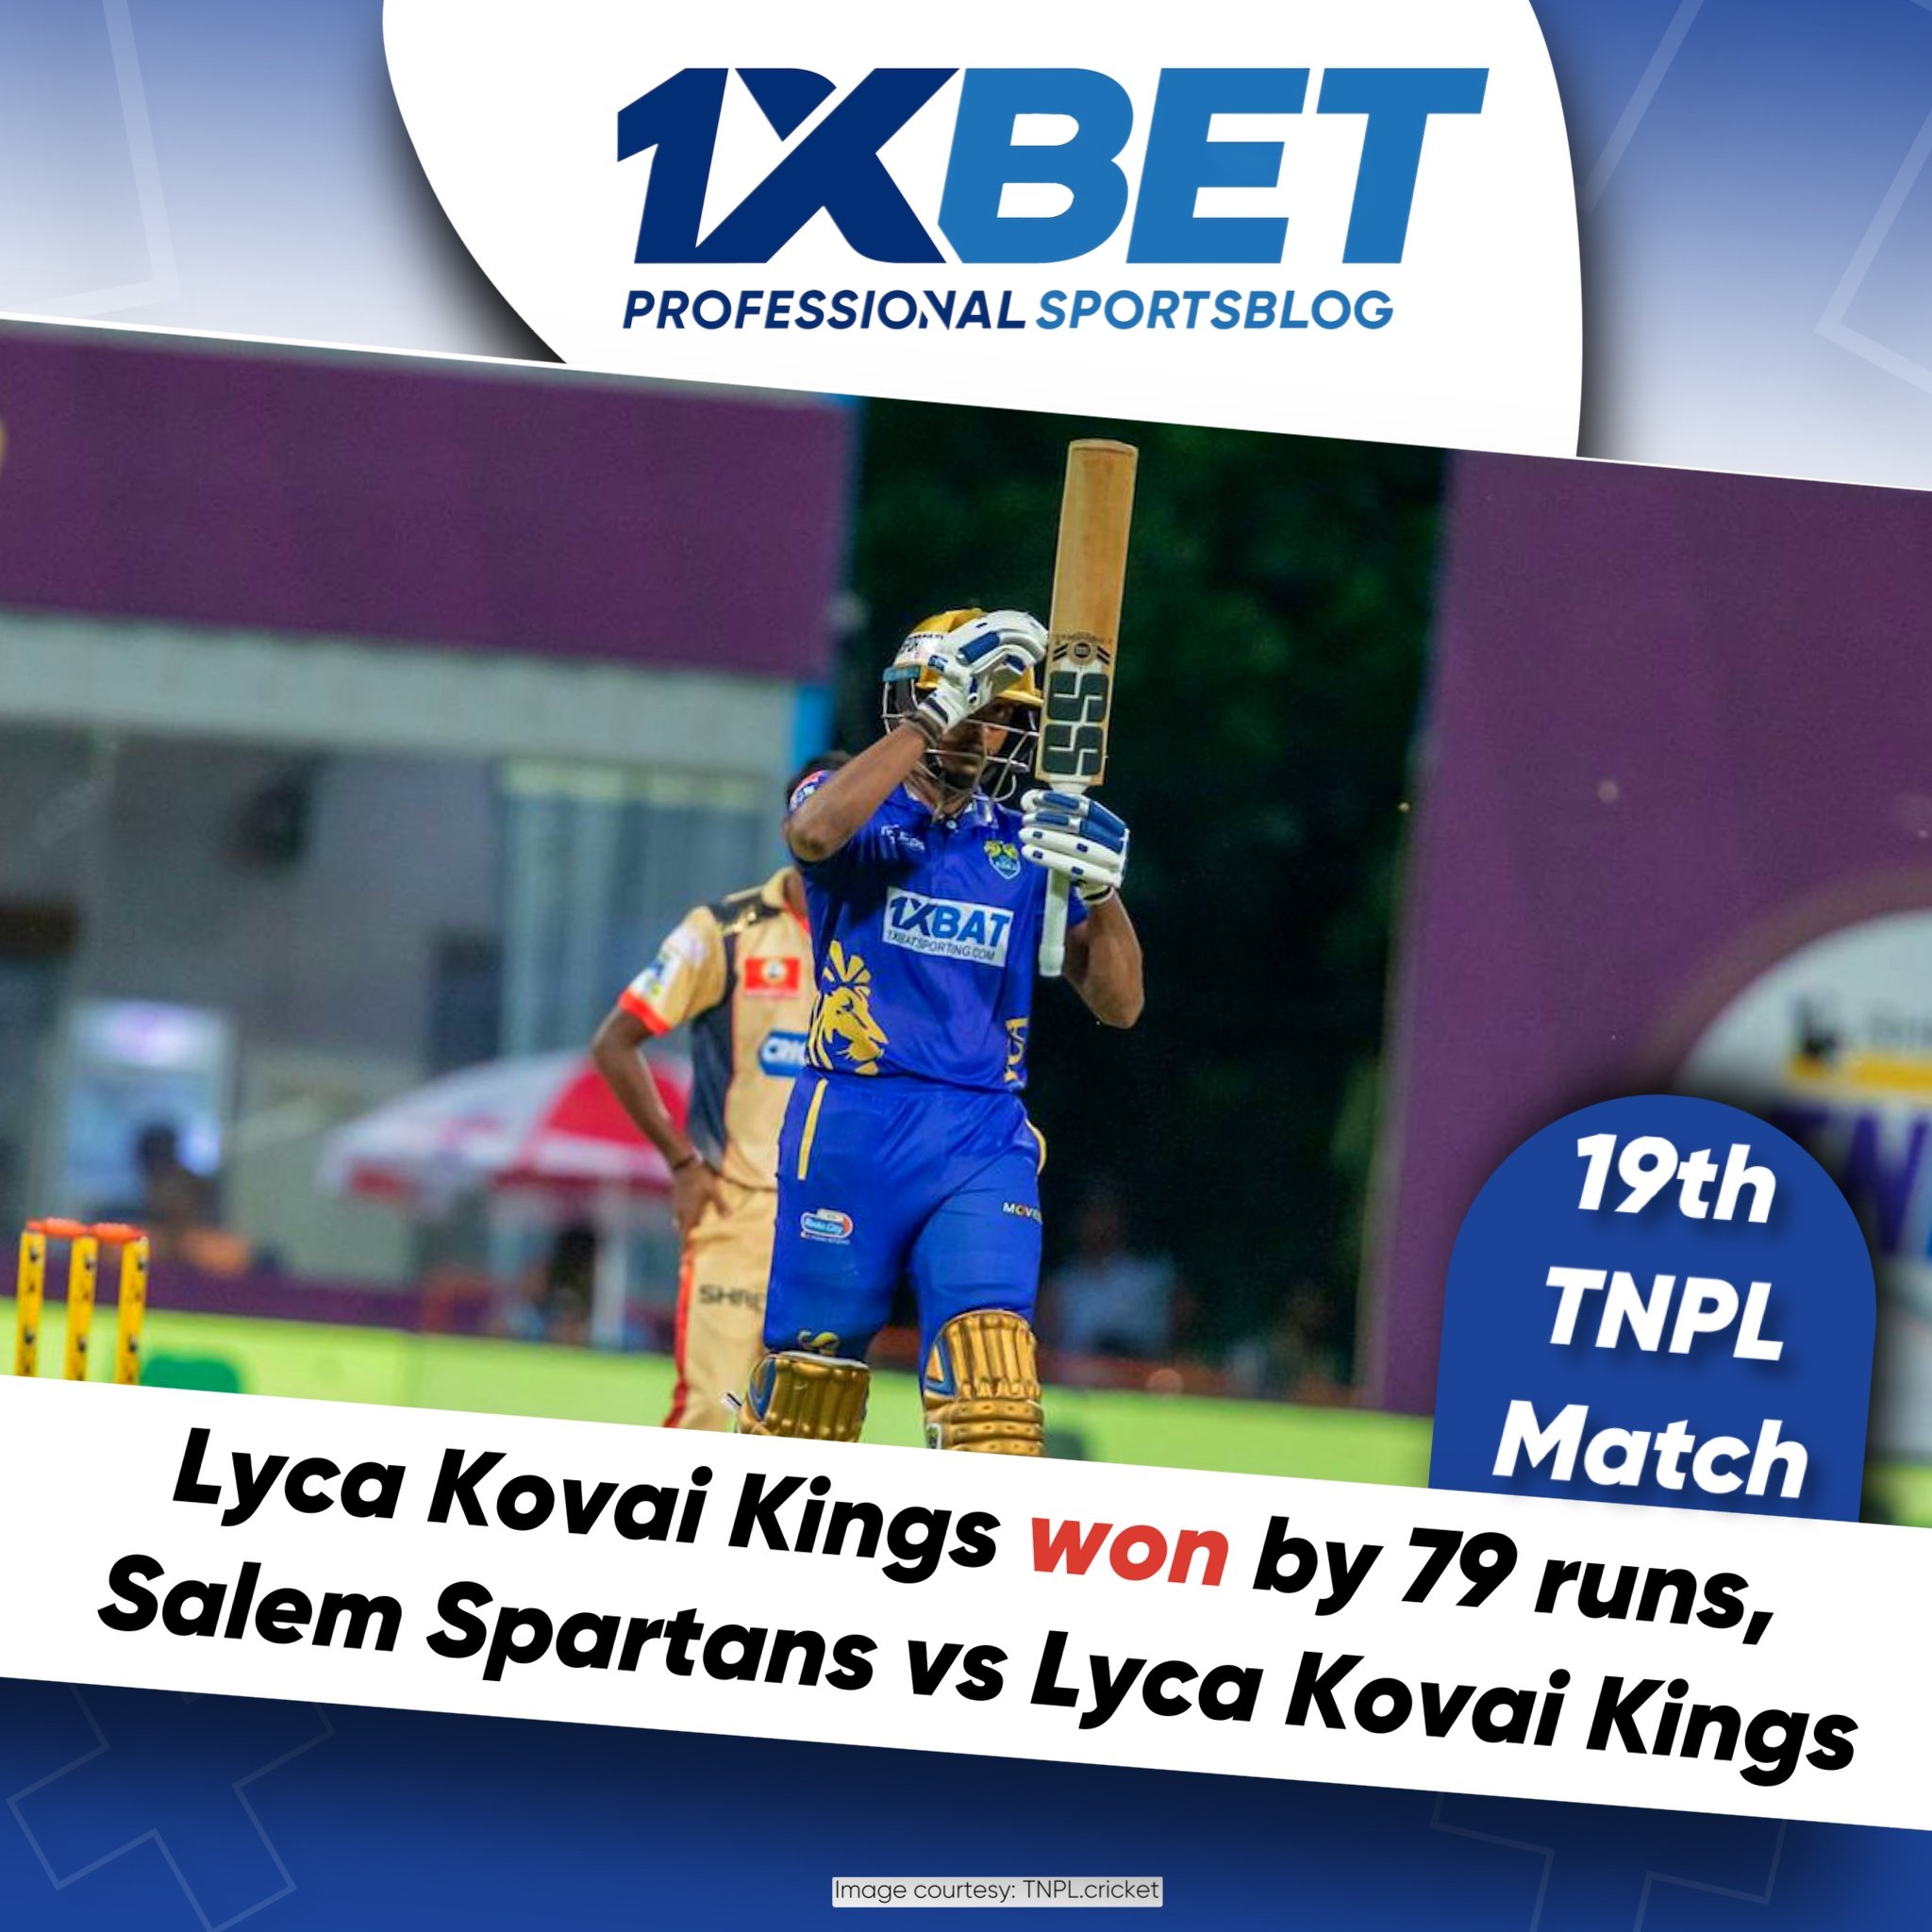 Lyca Kovai Kings won by 79 runs